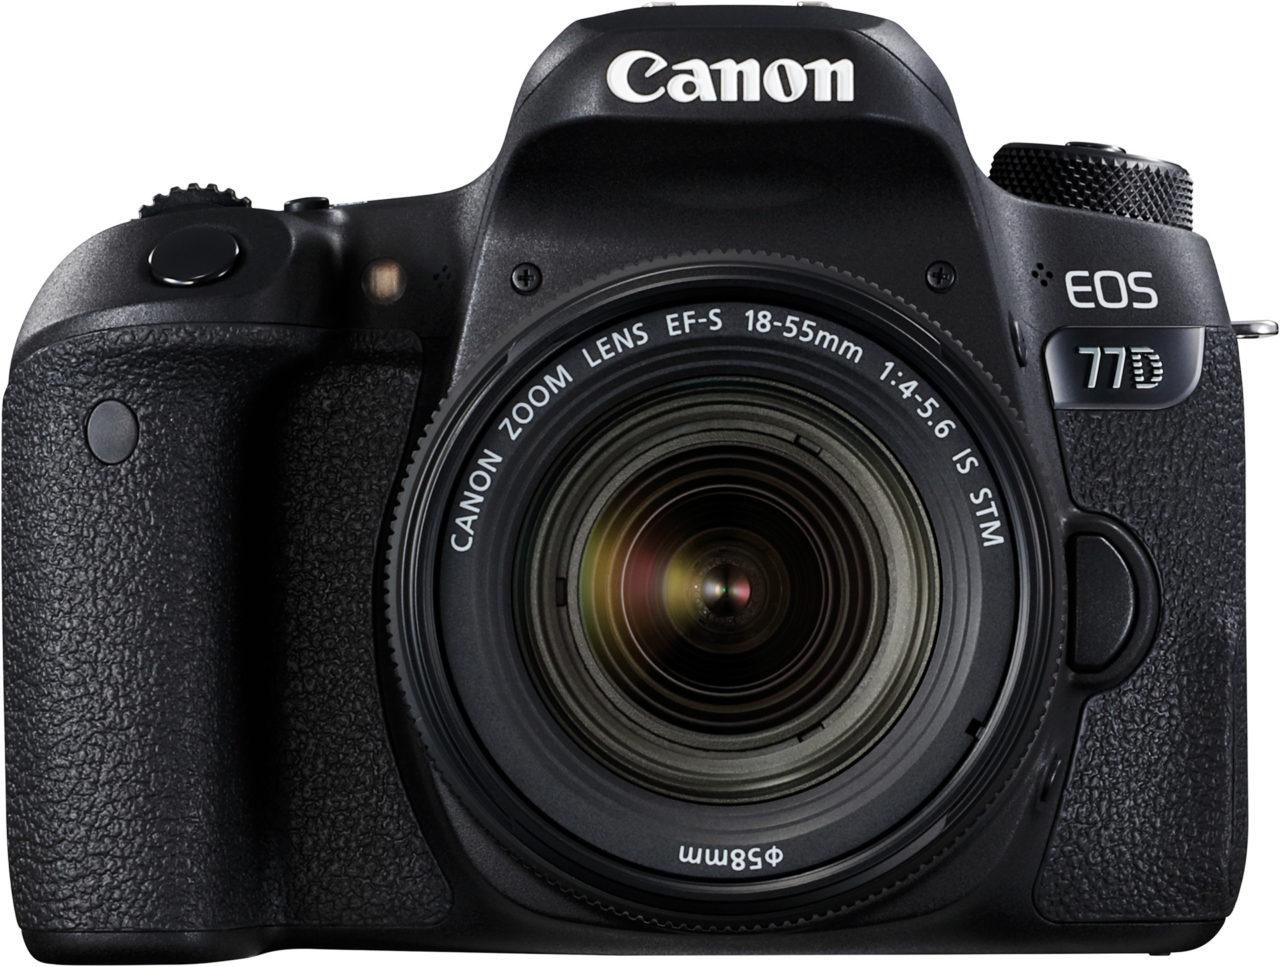 begroting Berekening Rubriek Canon EOS 77D Reviews & Ratings - TechTrot